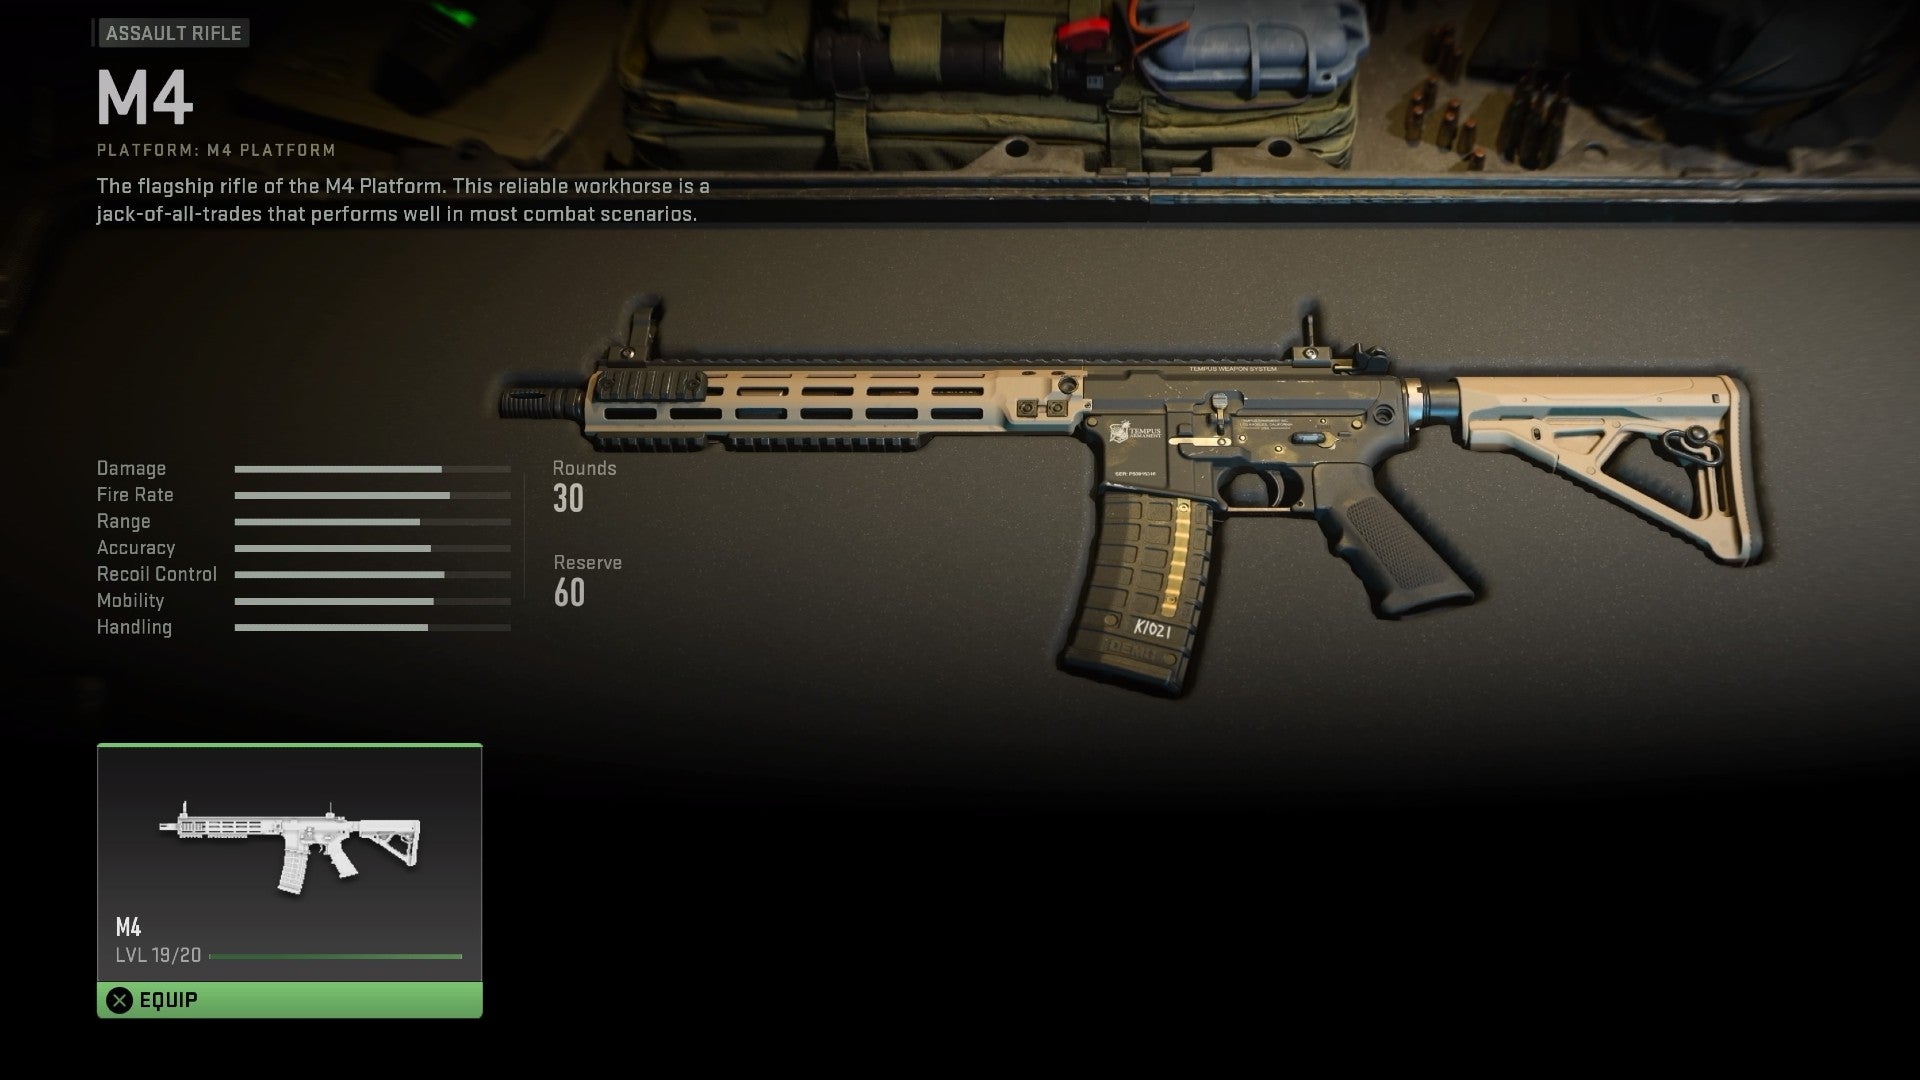 Скриншот бета-версии Modern Warfare 2, показывающий M4 в оружейном контейнере со статистикой слева.